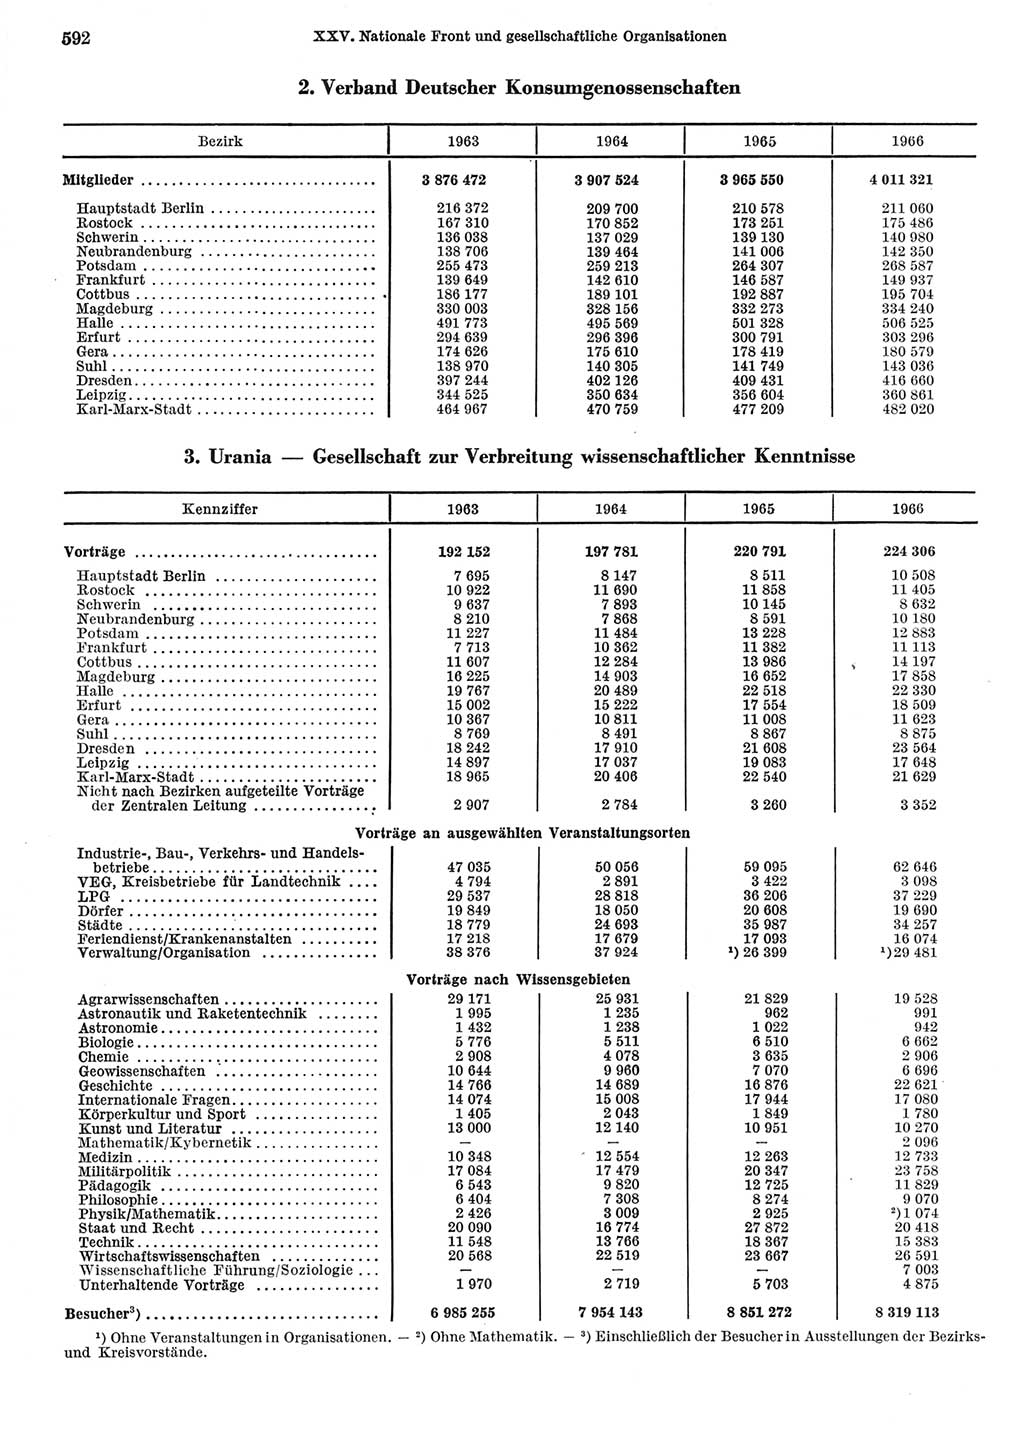 Statistisches Jahrbuch der Deutschen Demokratischen Republik (DDR) 1967, Seite 592 (Stat. Jb. DDR 1967, S. 592)